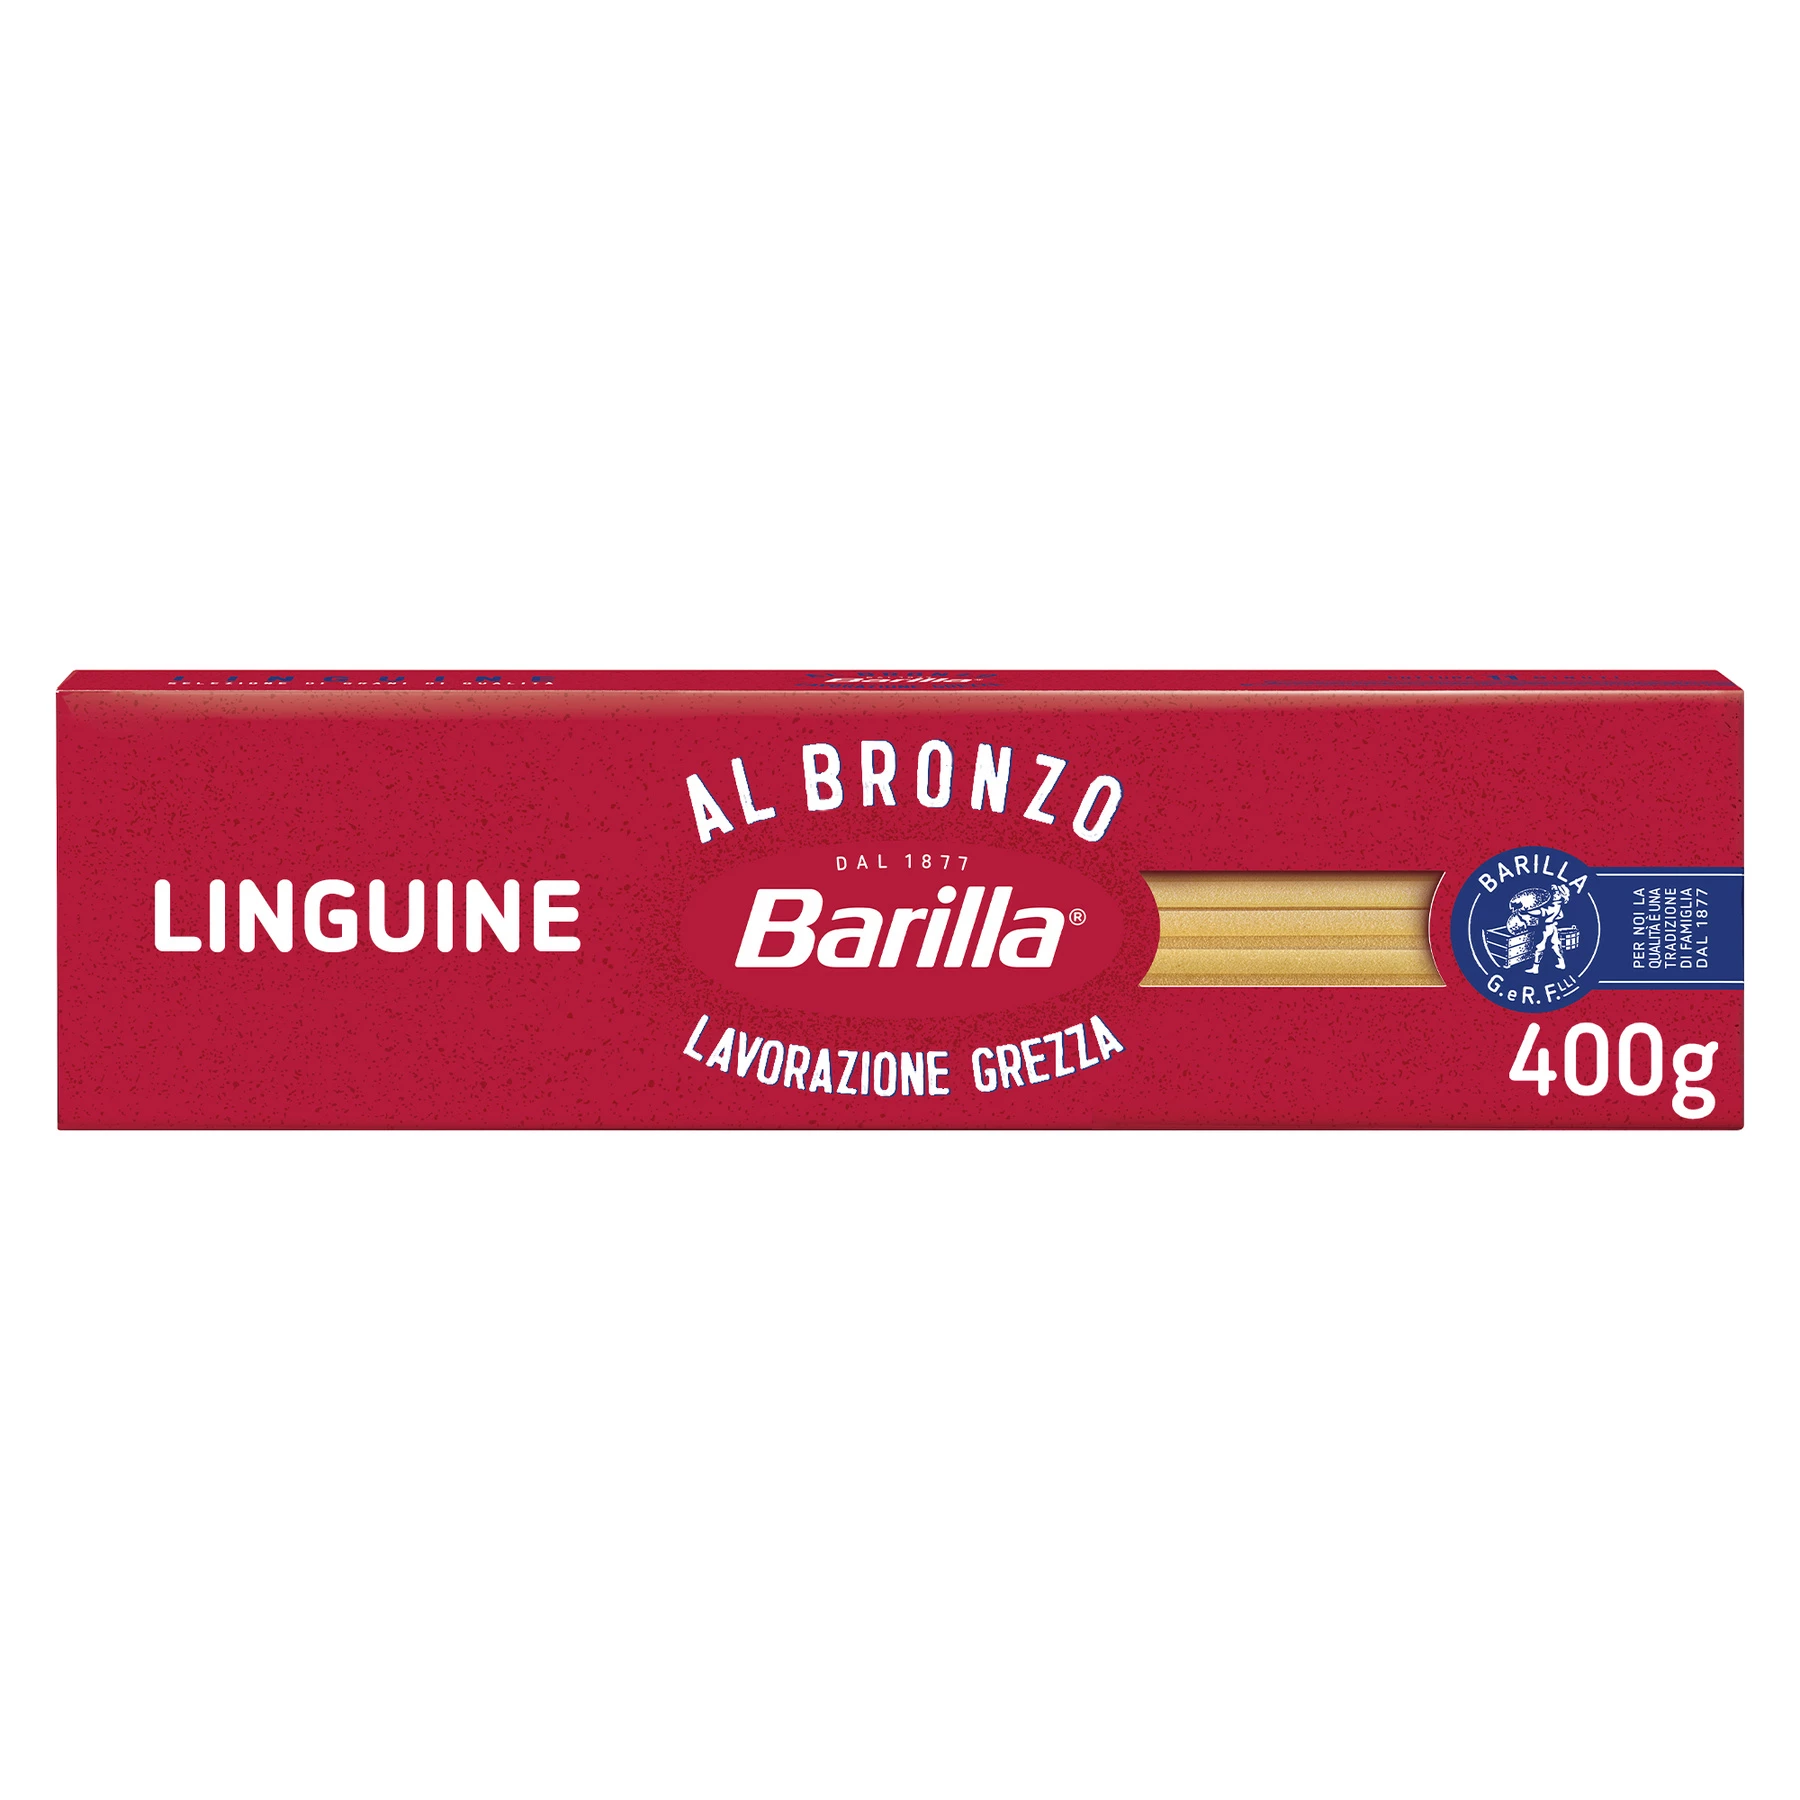 Linguine Al Bronzo Pasta, 400g - BARILLA